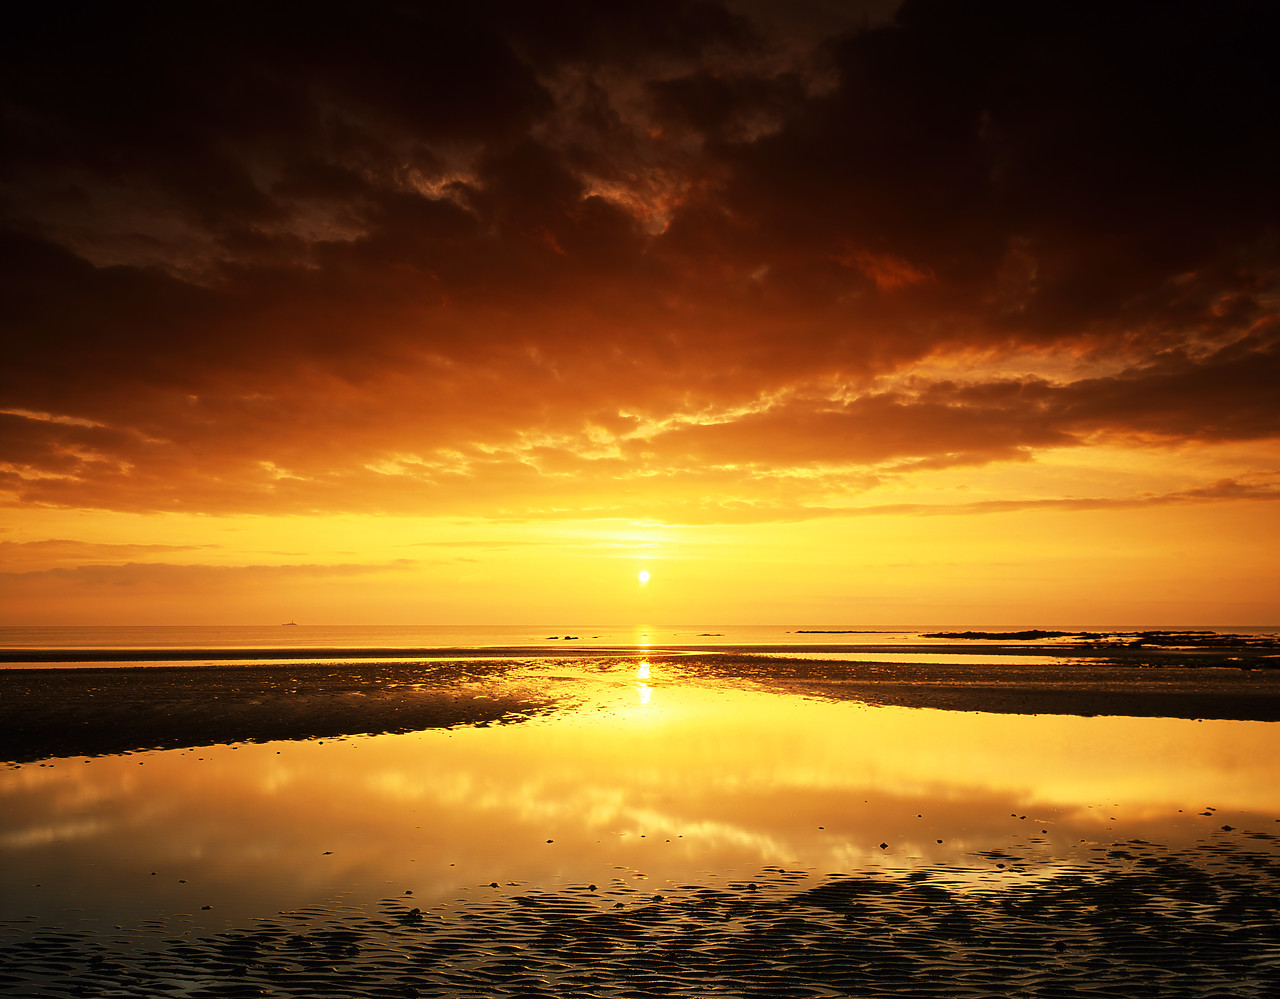 #030290-1 - Sunrise over Beach, Rush, Co.Dublin, Ireland